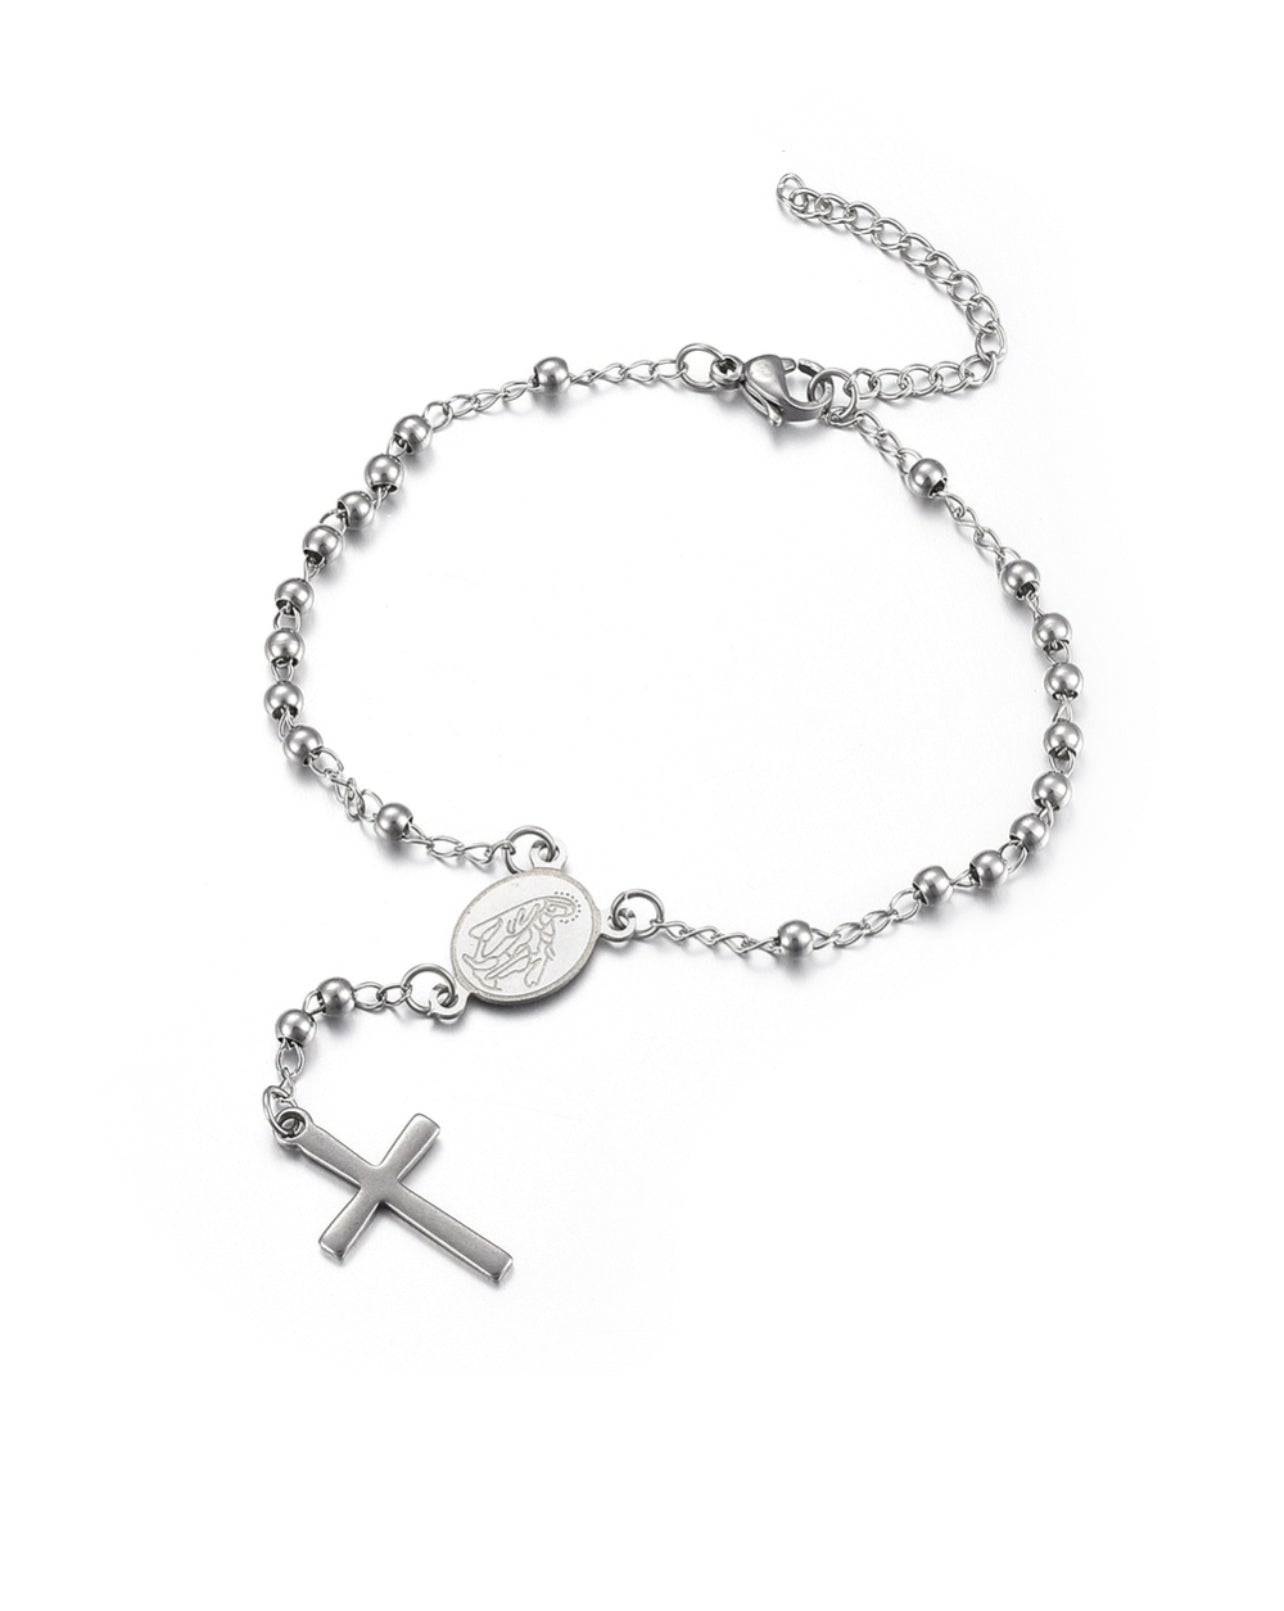 Rosary Bracelets 2.0